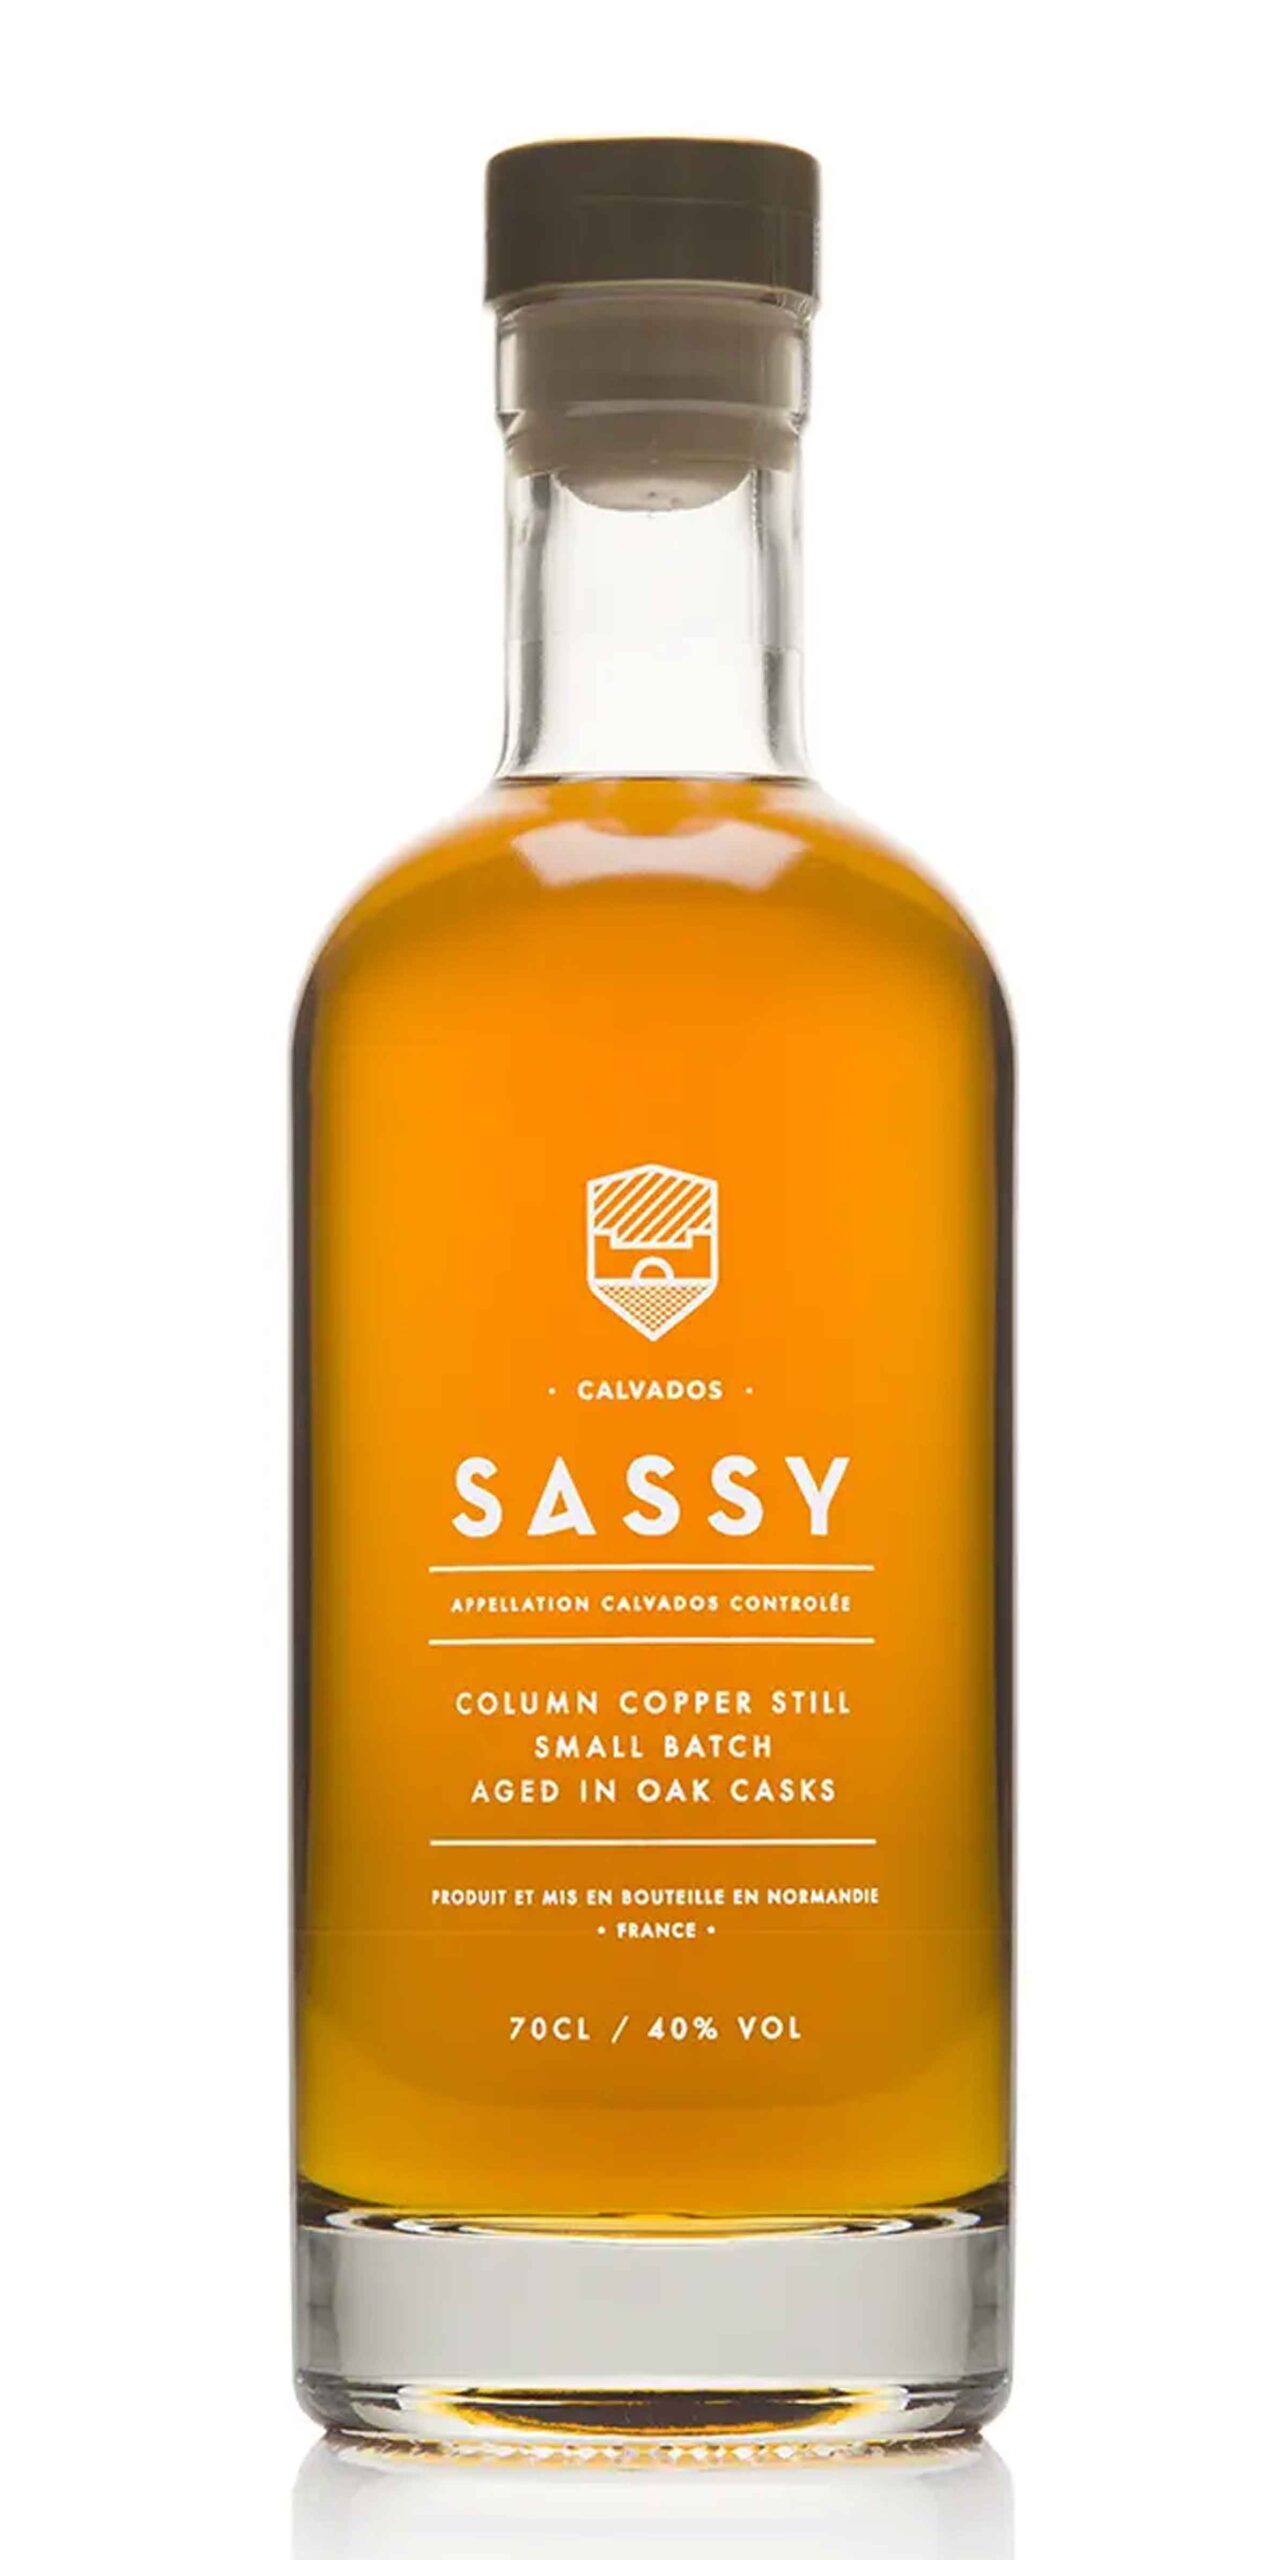 Sassy Calvados